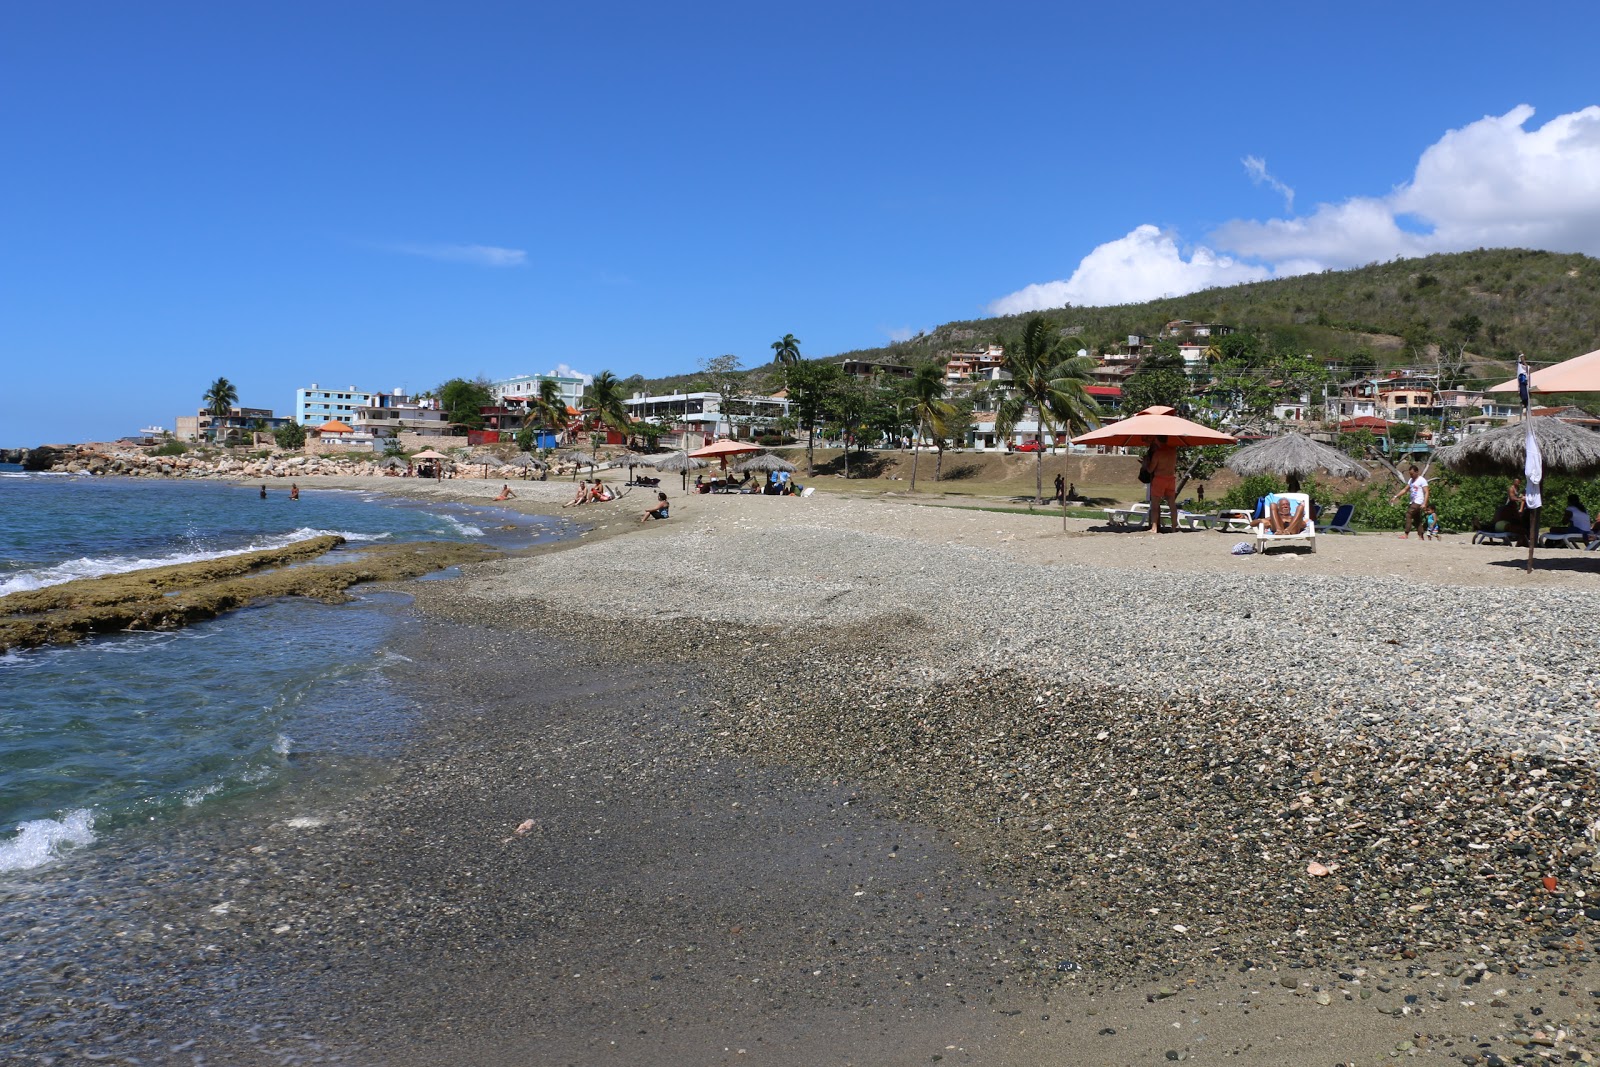 Fotografija Playa de Siboney z turkizna voda površino